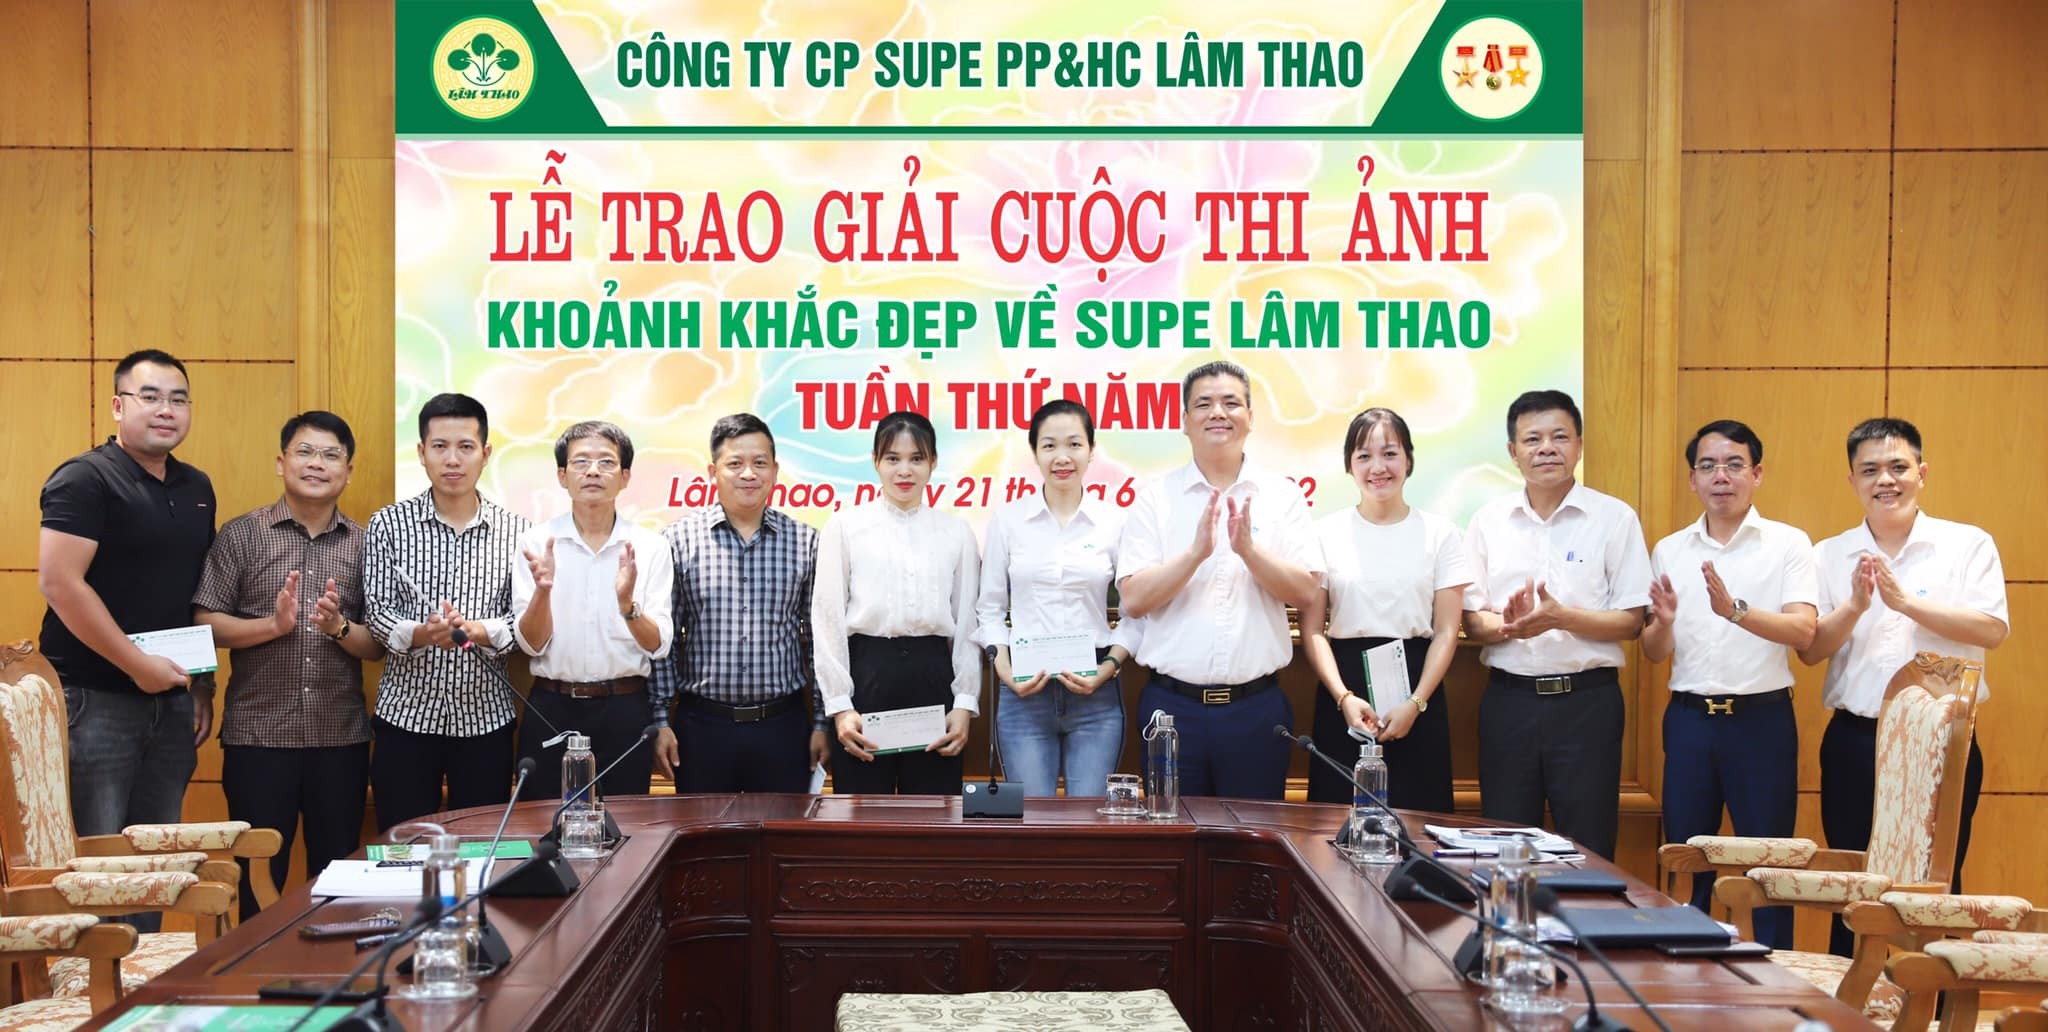 Trao giải Cuộc thi ảnh “Khoảnh khắc đẹp về Supe Lâm Thao” tuần thứ 5.